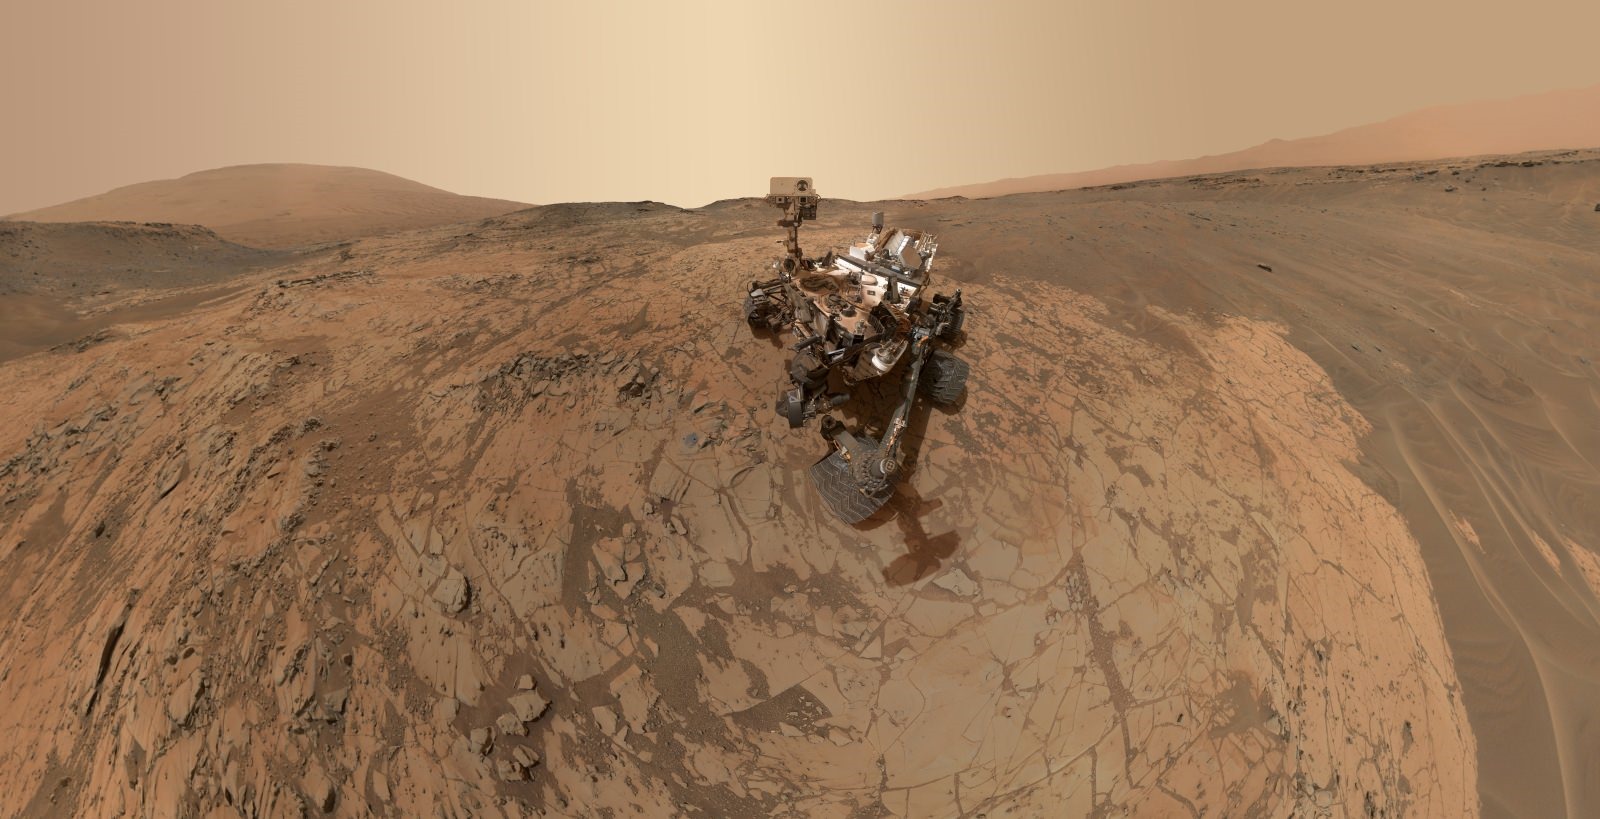 Le dernier égoportrait du Curiosity sur son nouveau site de recherche martien